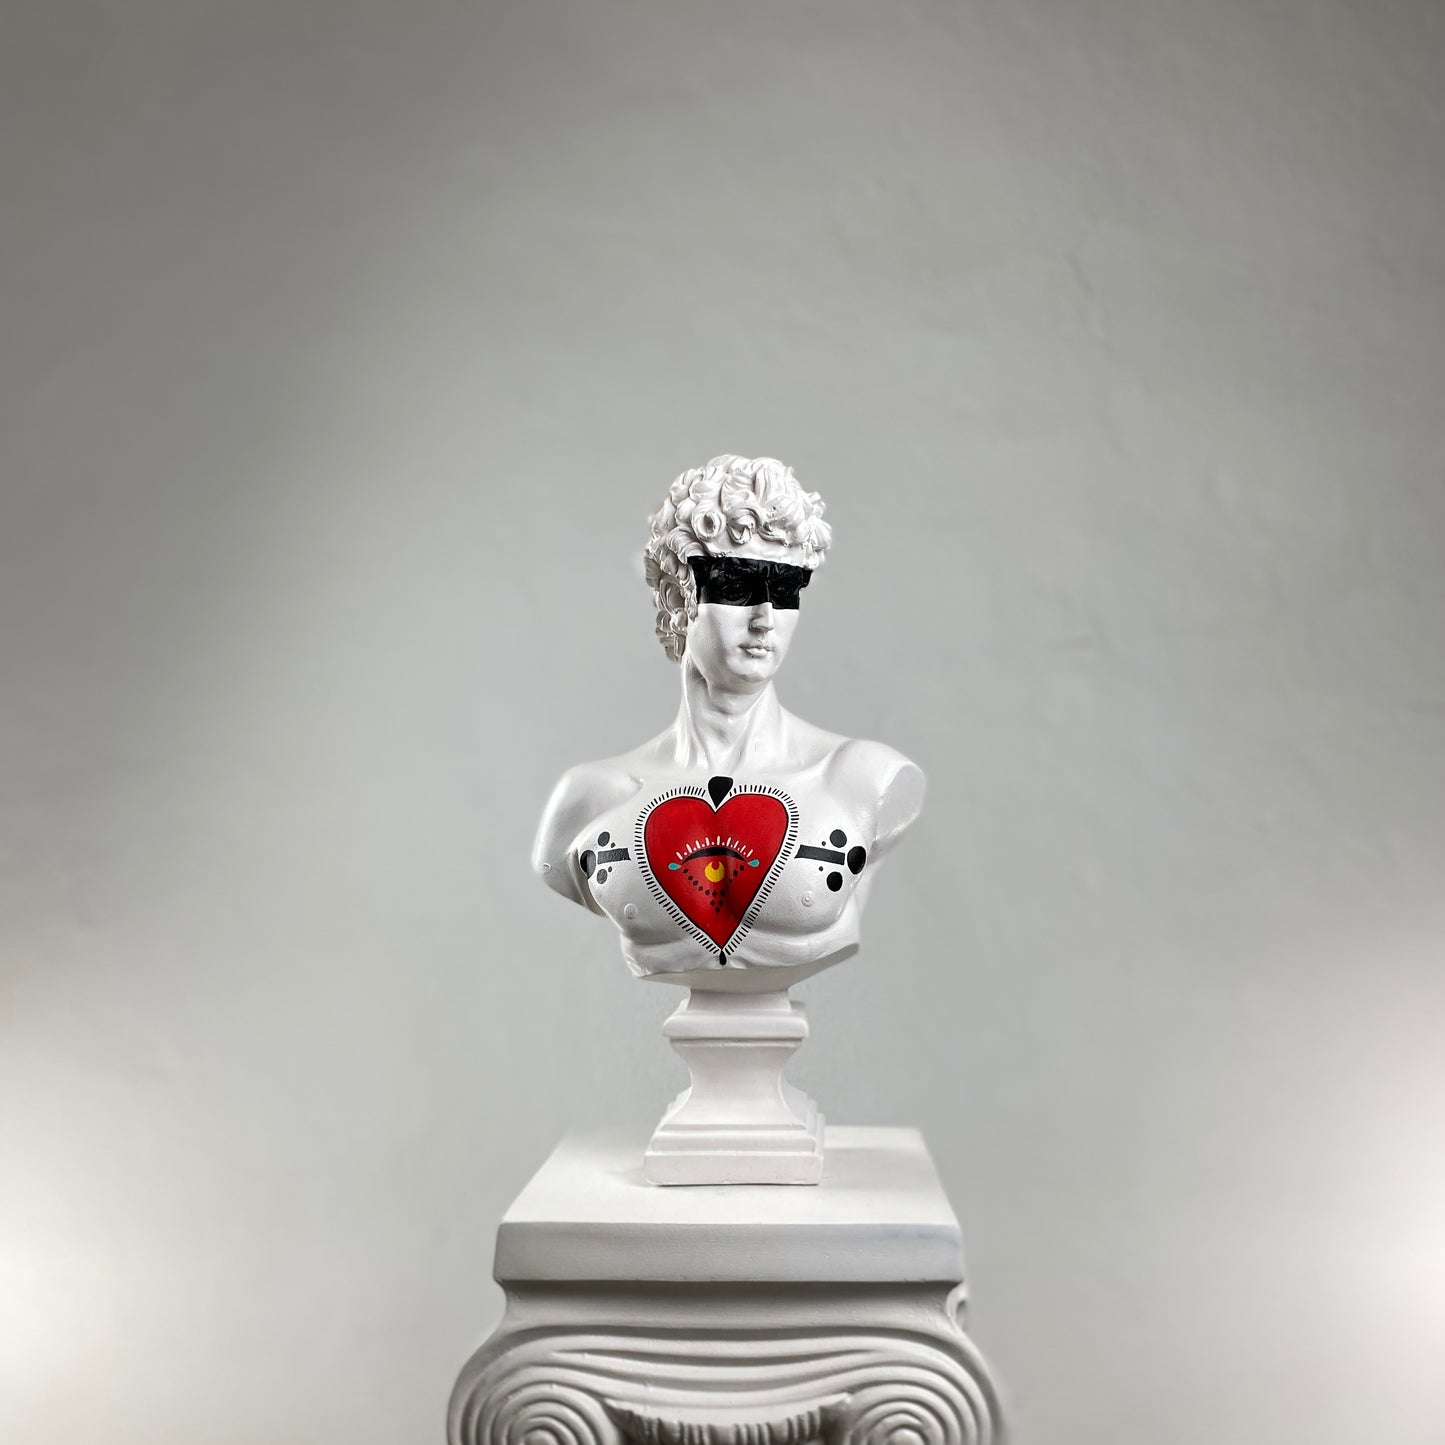 David 'Eye of Heart' Pop Art Sculpture, Modern Home Decor, Large Sculpture